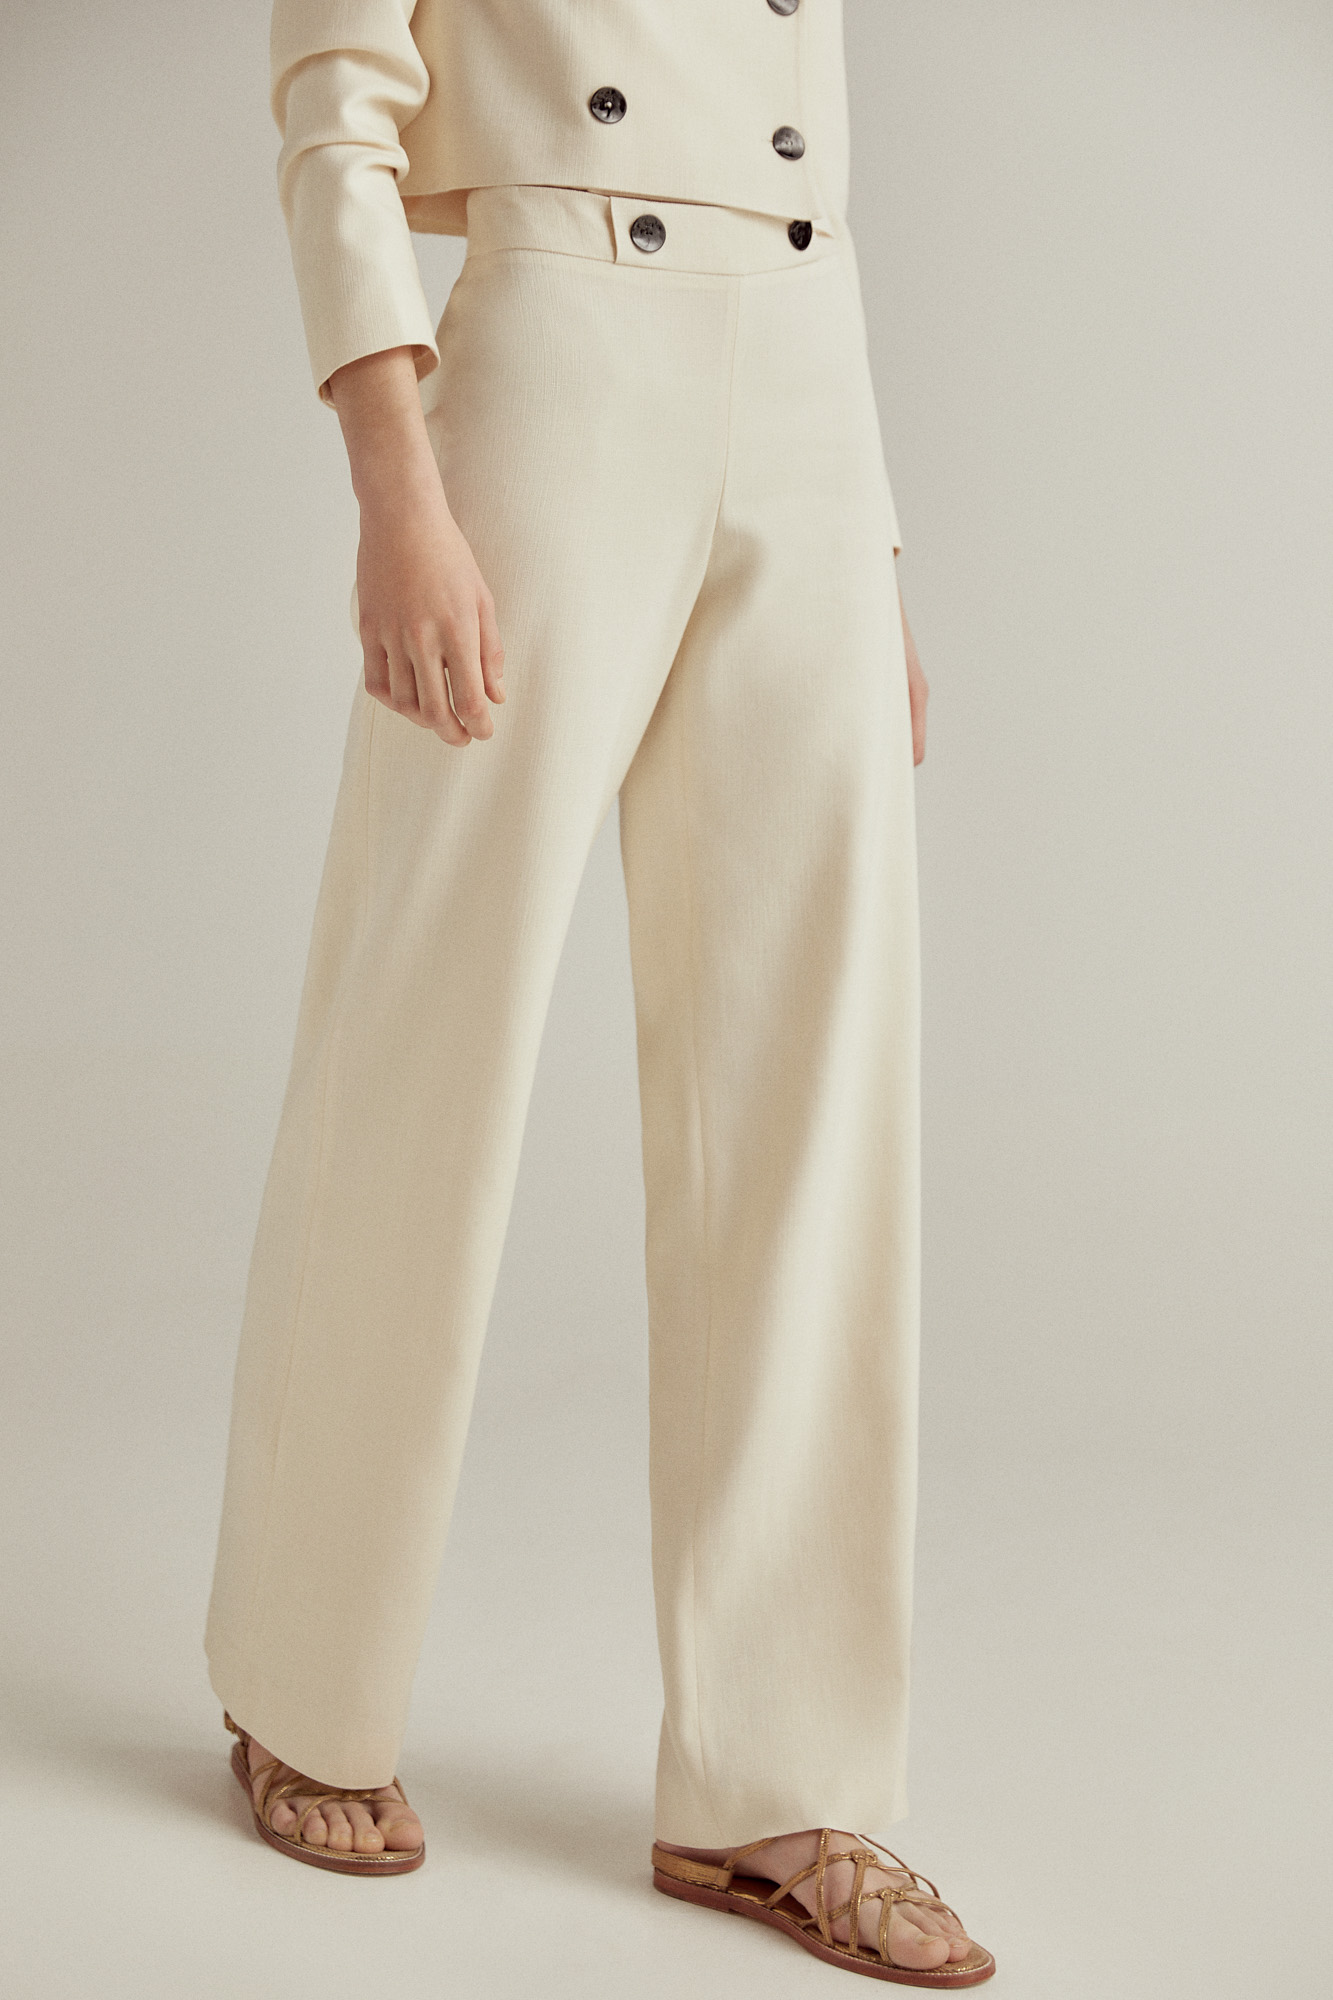 Pantalón para Mujer Blanco de Tela Tiro Medio - Alto - Terragona